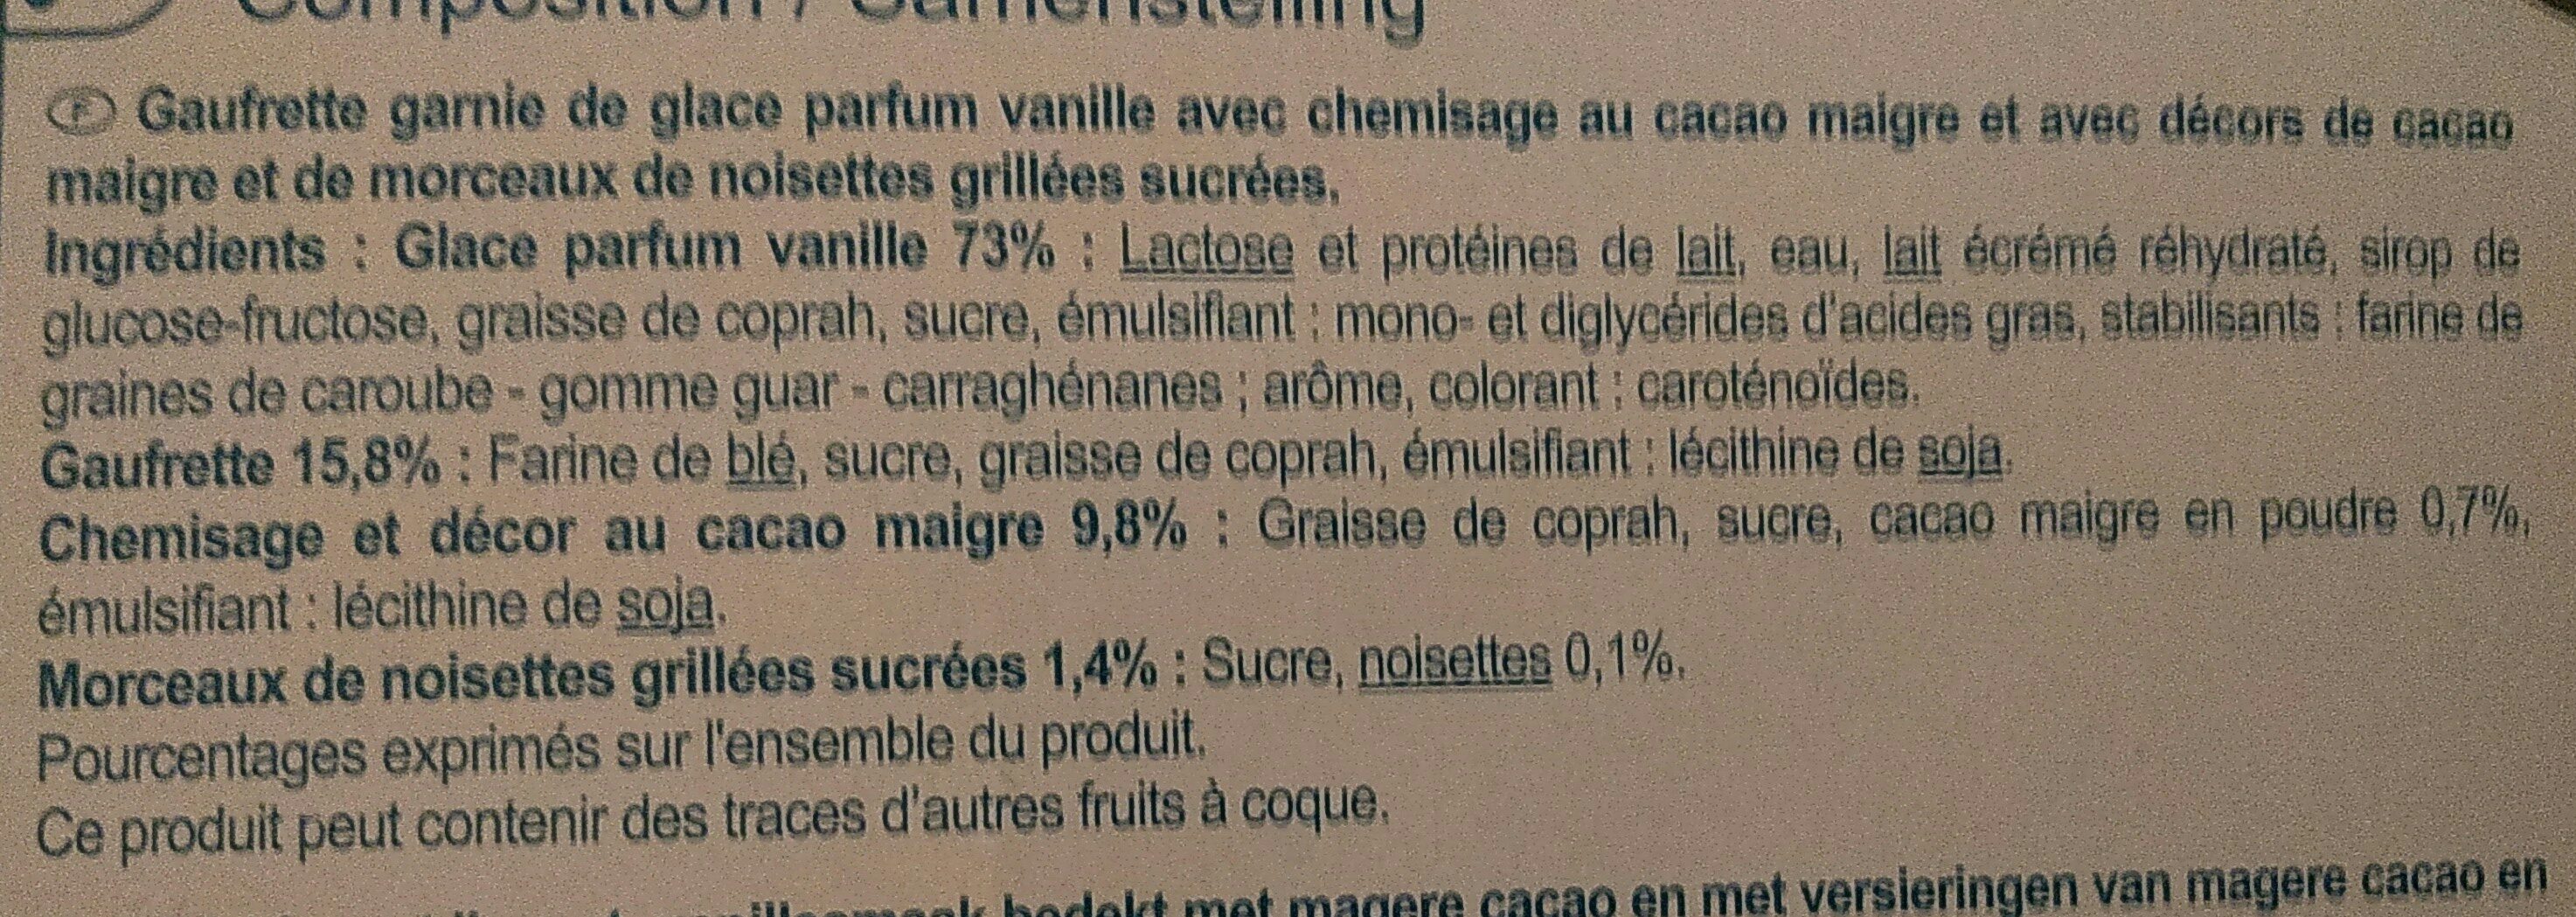 Cônes parfum vanille - Ingredients - fr